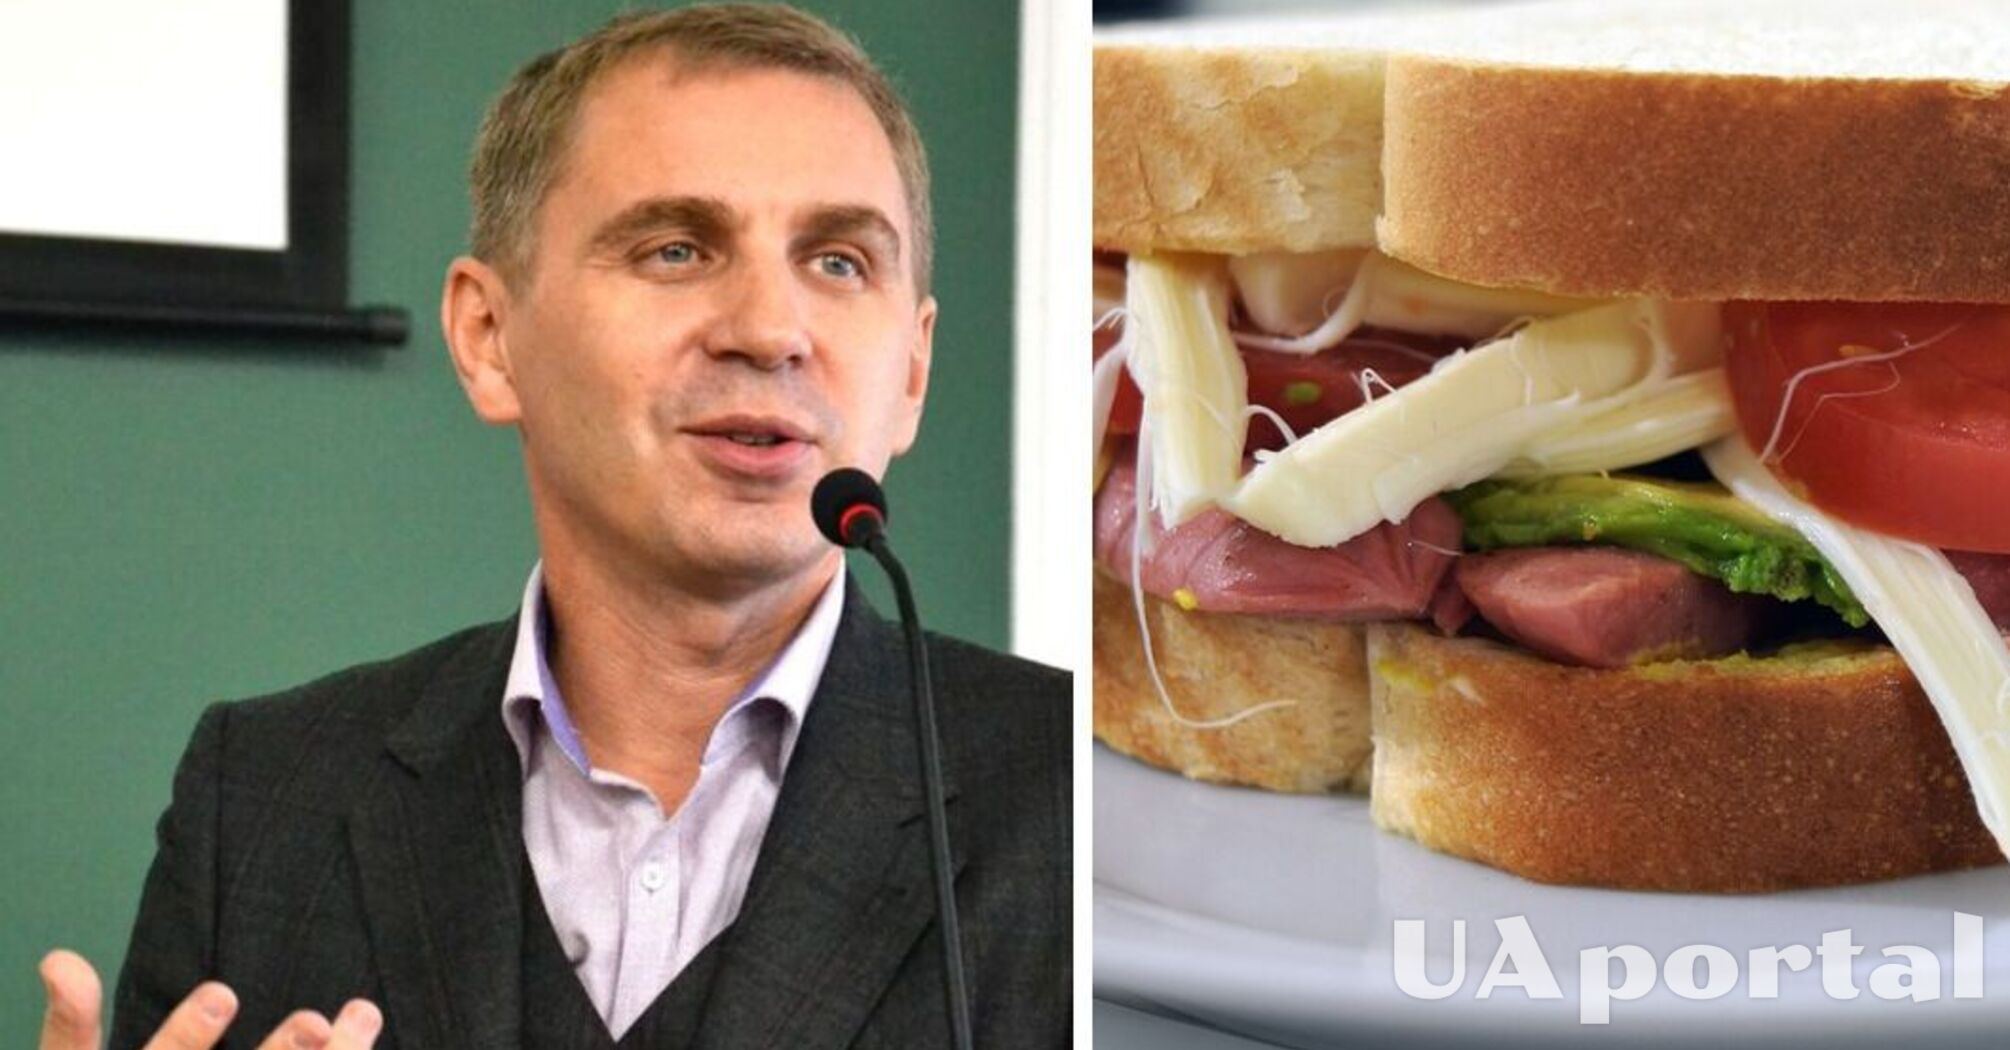 Как на украинском можно назвать 'бутерброд': языковед привел интересный пример